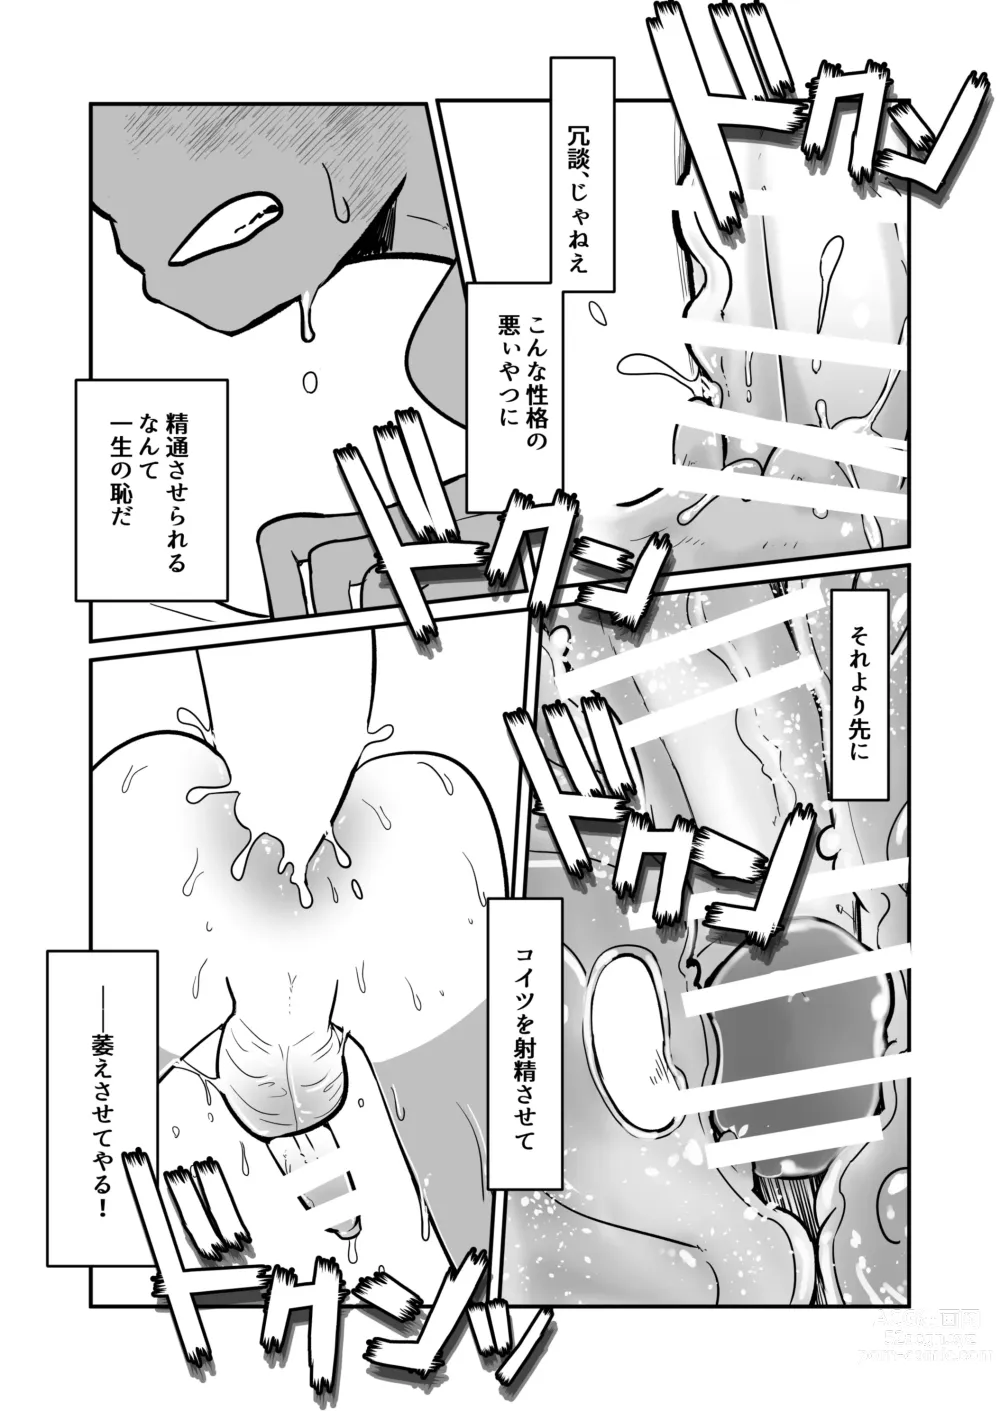 Page 69 of doujinshi Seiyoku no Hanashi.